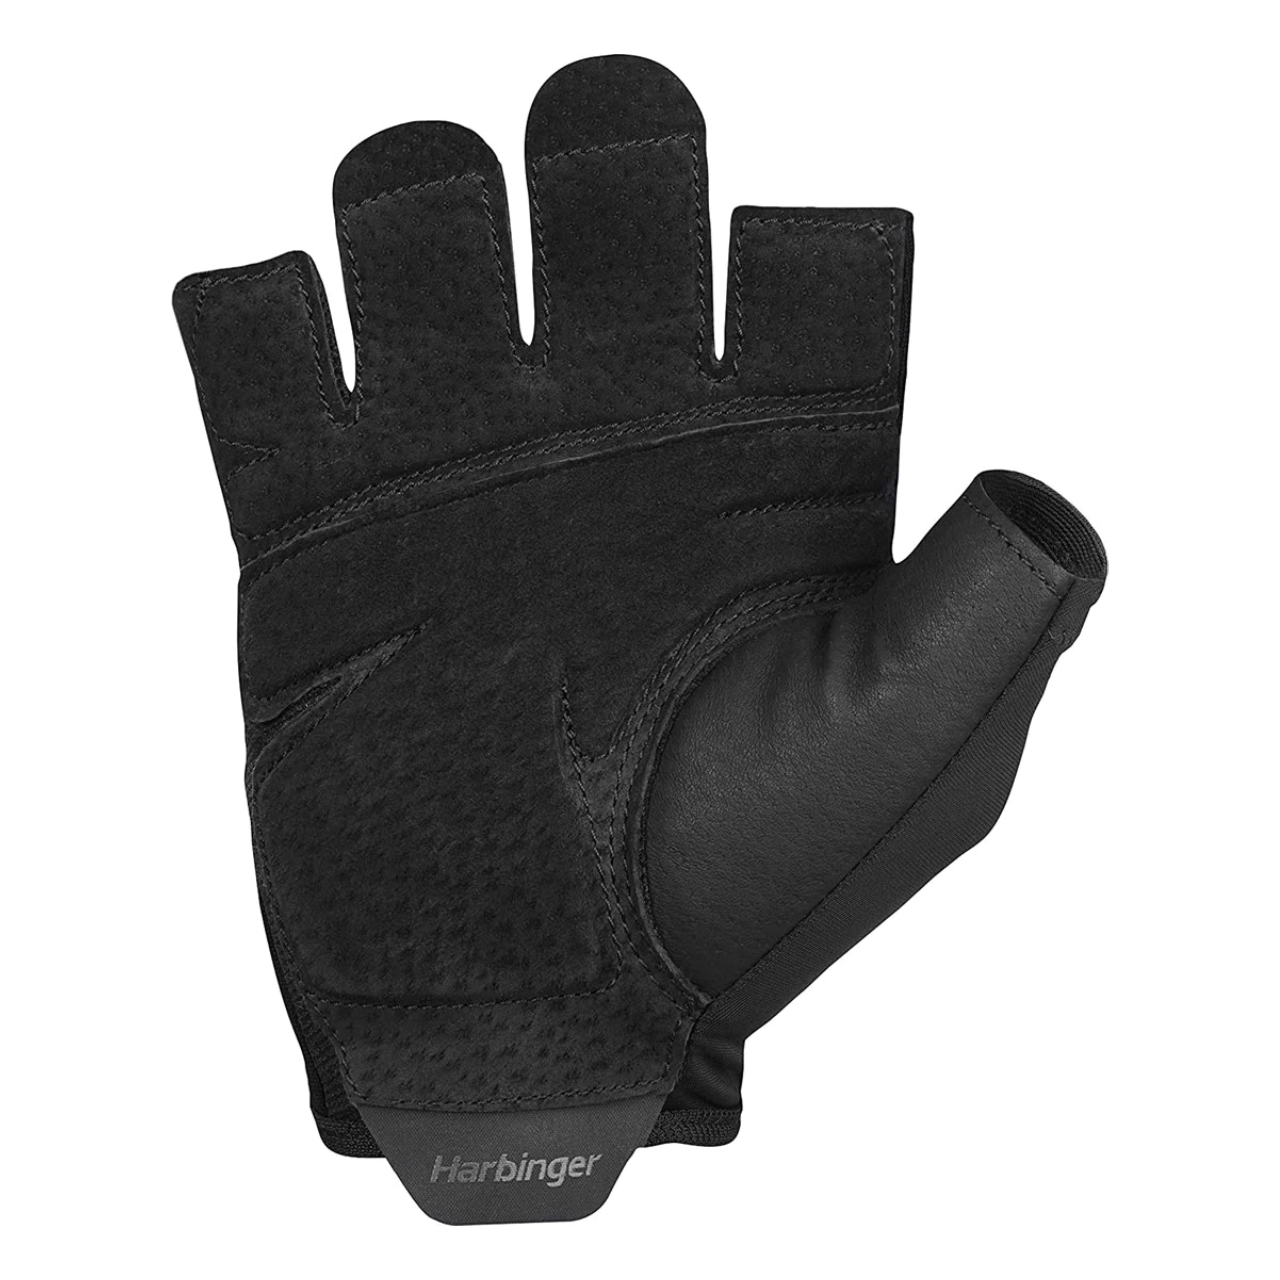 Harbinger Training Grip 2.0 Fitness Gloves, Unisex